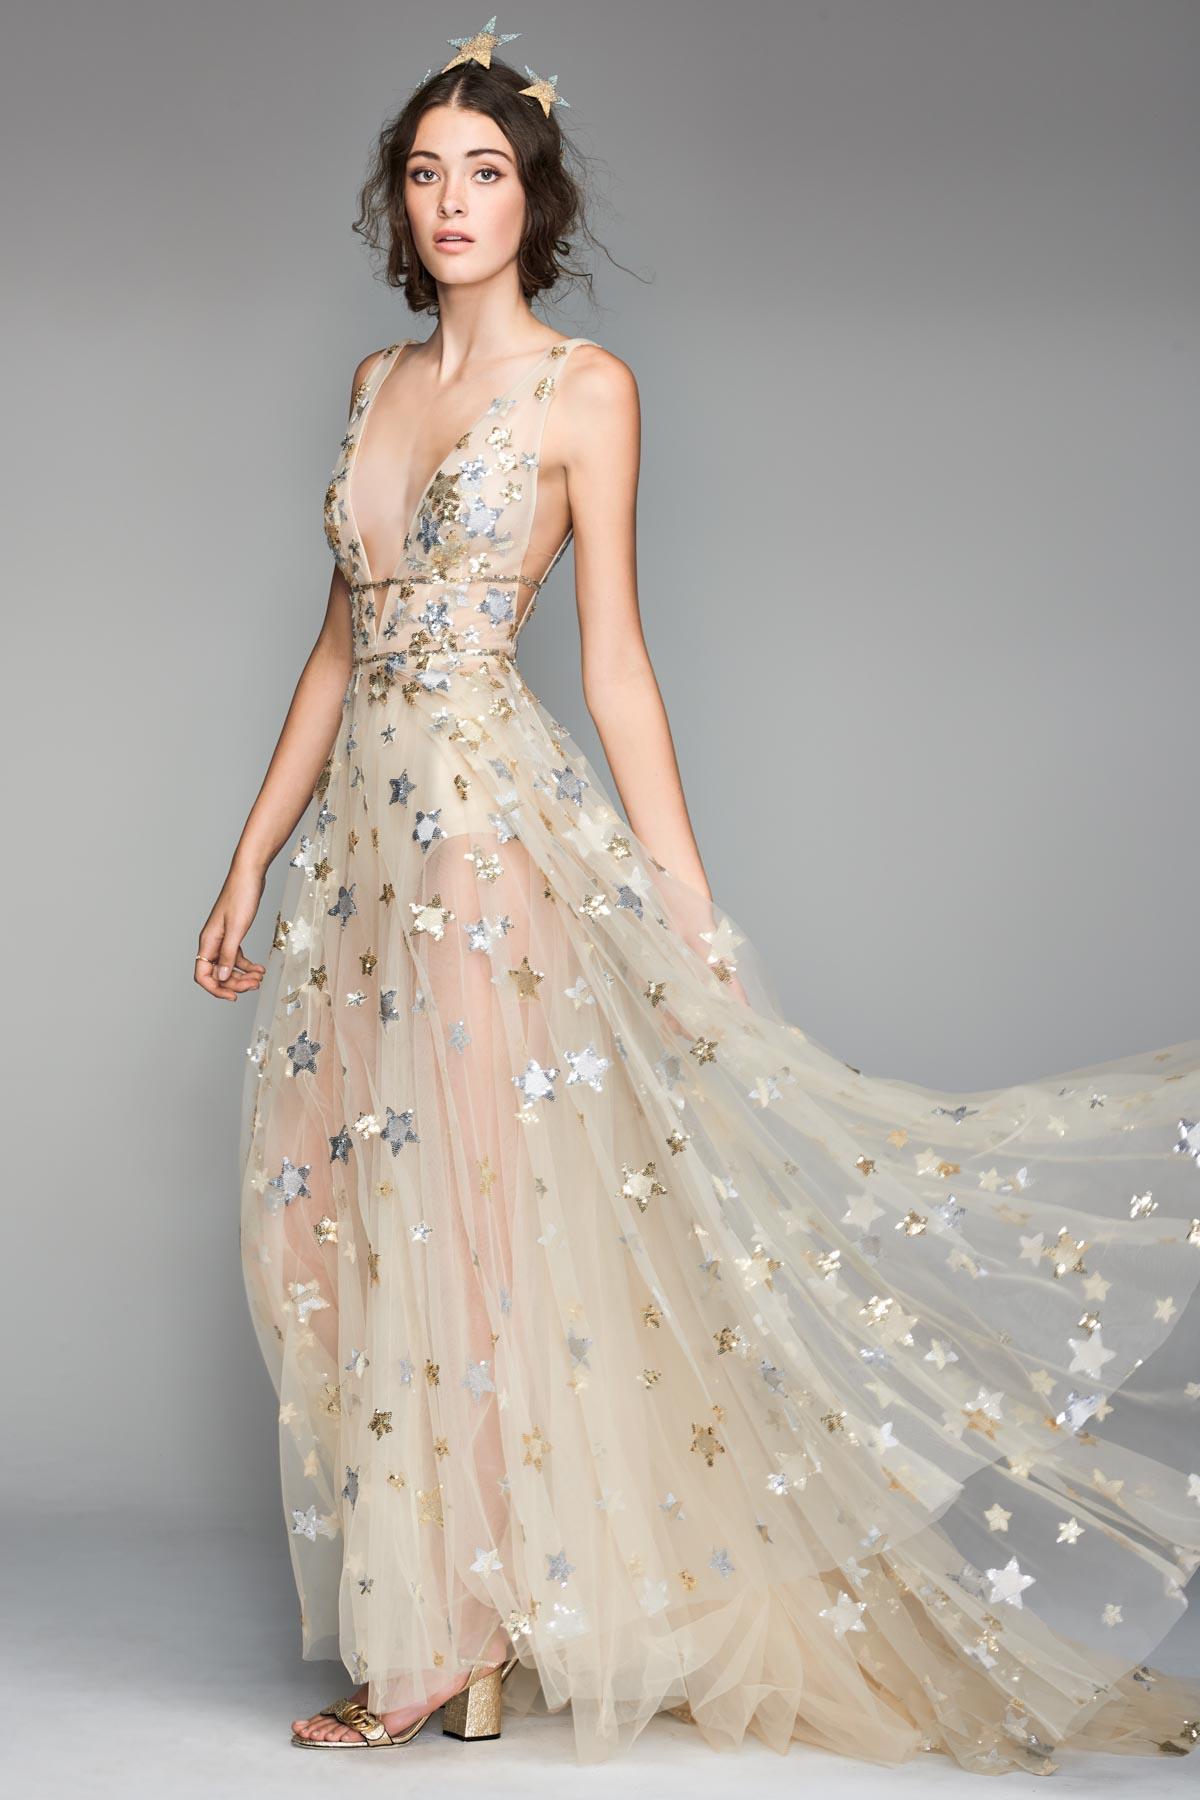 The Best Celestial Wedding Dresses: 24 ...